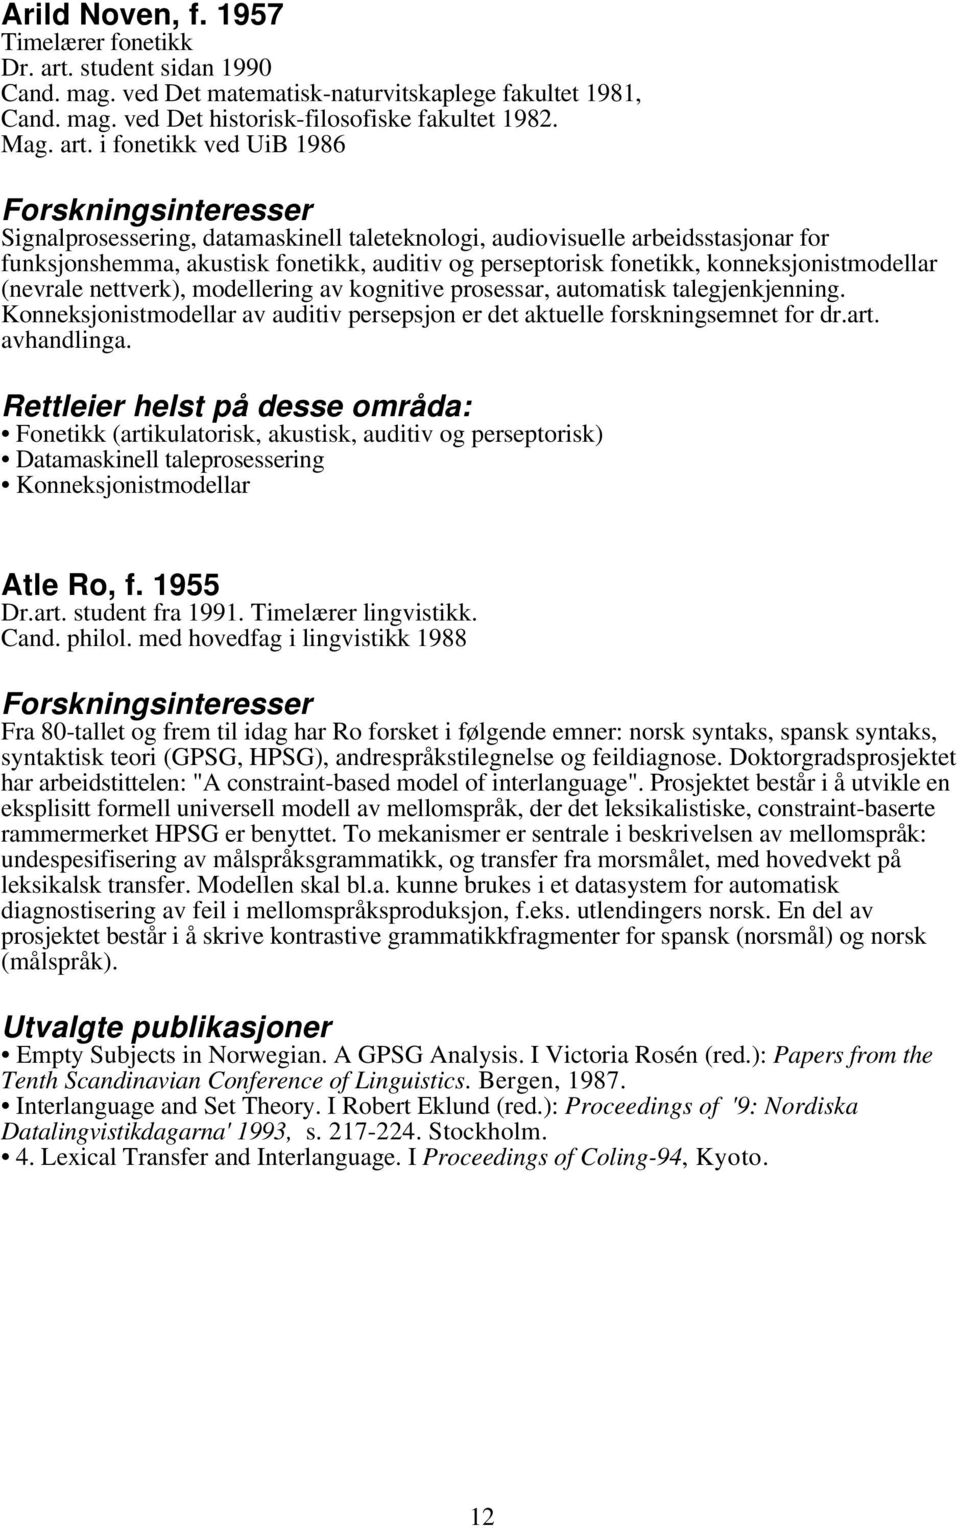 i fonetikk ved UiB 1986 Signalprosessering, datamaskinell taleteknologi, audiovisuelle arbeidsstasjonar for funksjonshemma, akustisk fonetikk, auditiv og perseptorisk fonetikk, konneksjonistmodellar